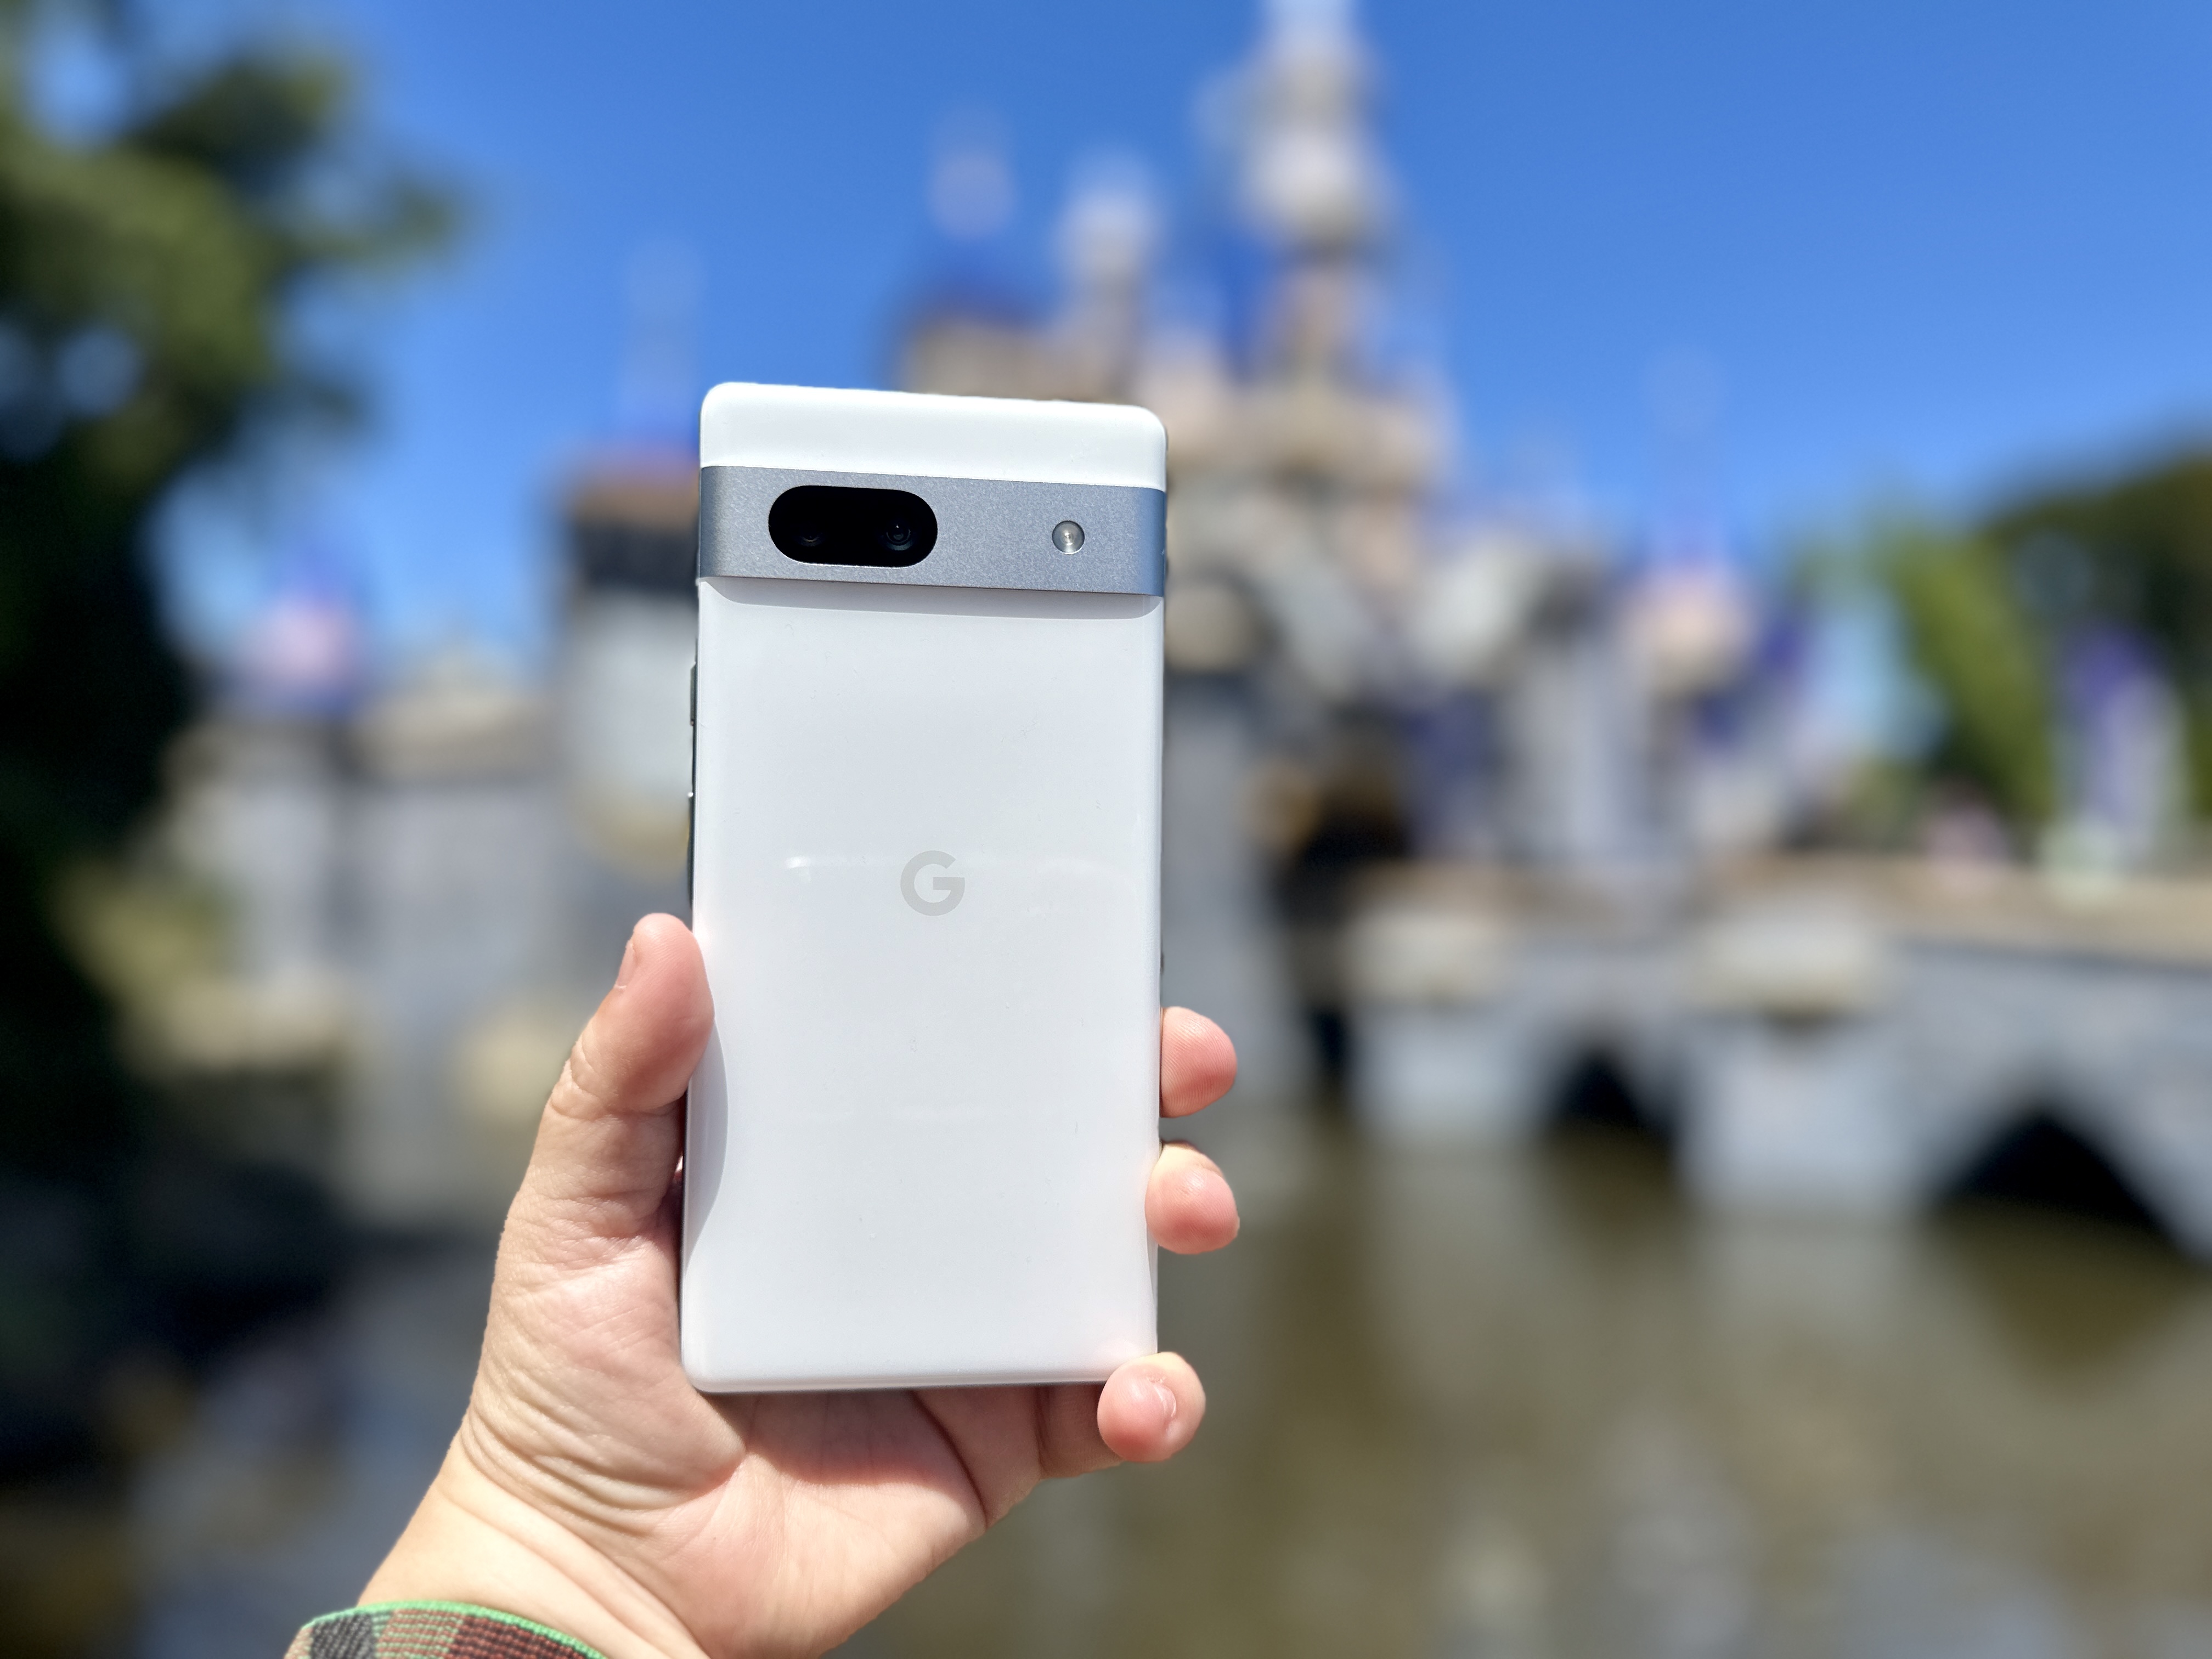 Google Pixel 7a held in hand in front of Disneyland castle